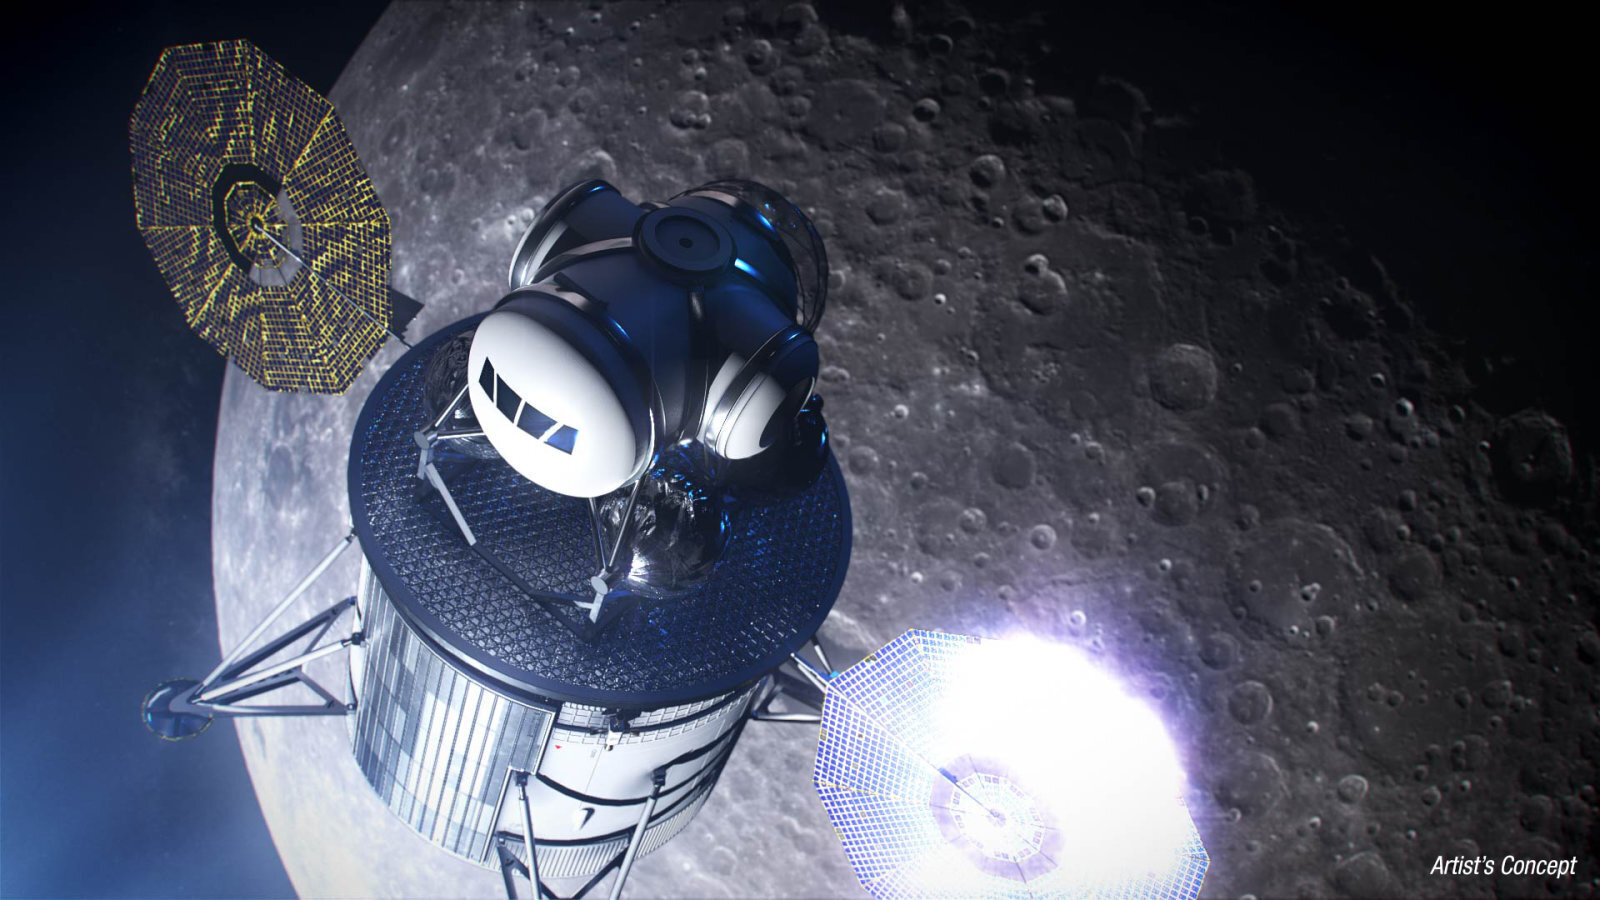 Η NASA θα συνεργαστεί με τις SpaceX και Blue Origin για την αποστολή ανθρώπων στο Φεγγάρι μέσα στα επόμενα πέντε χρόνια